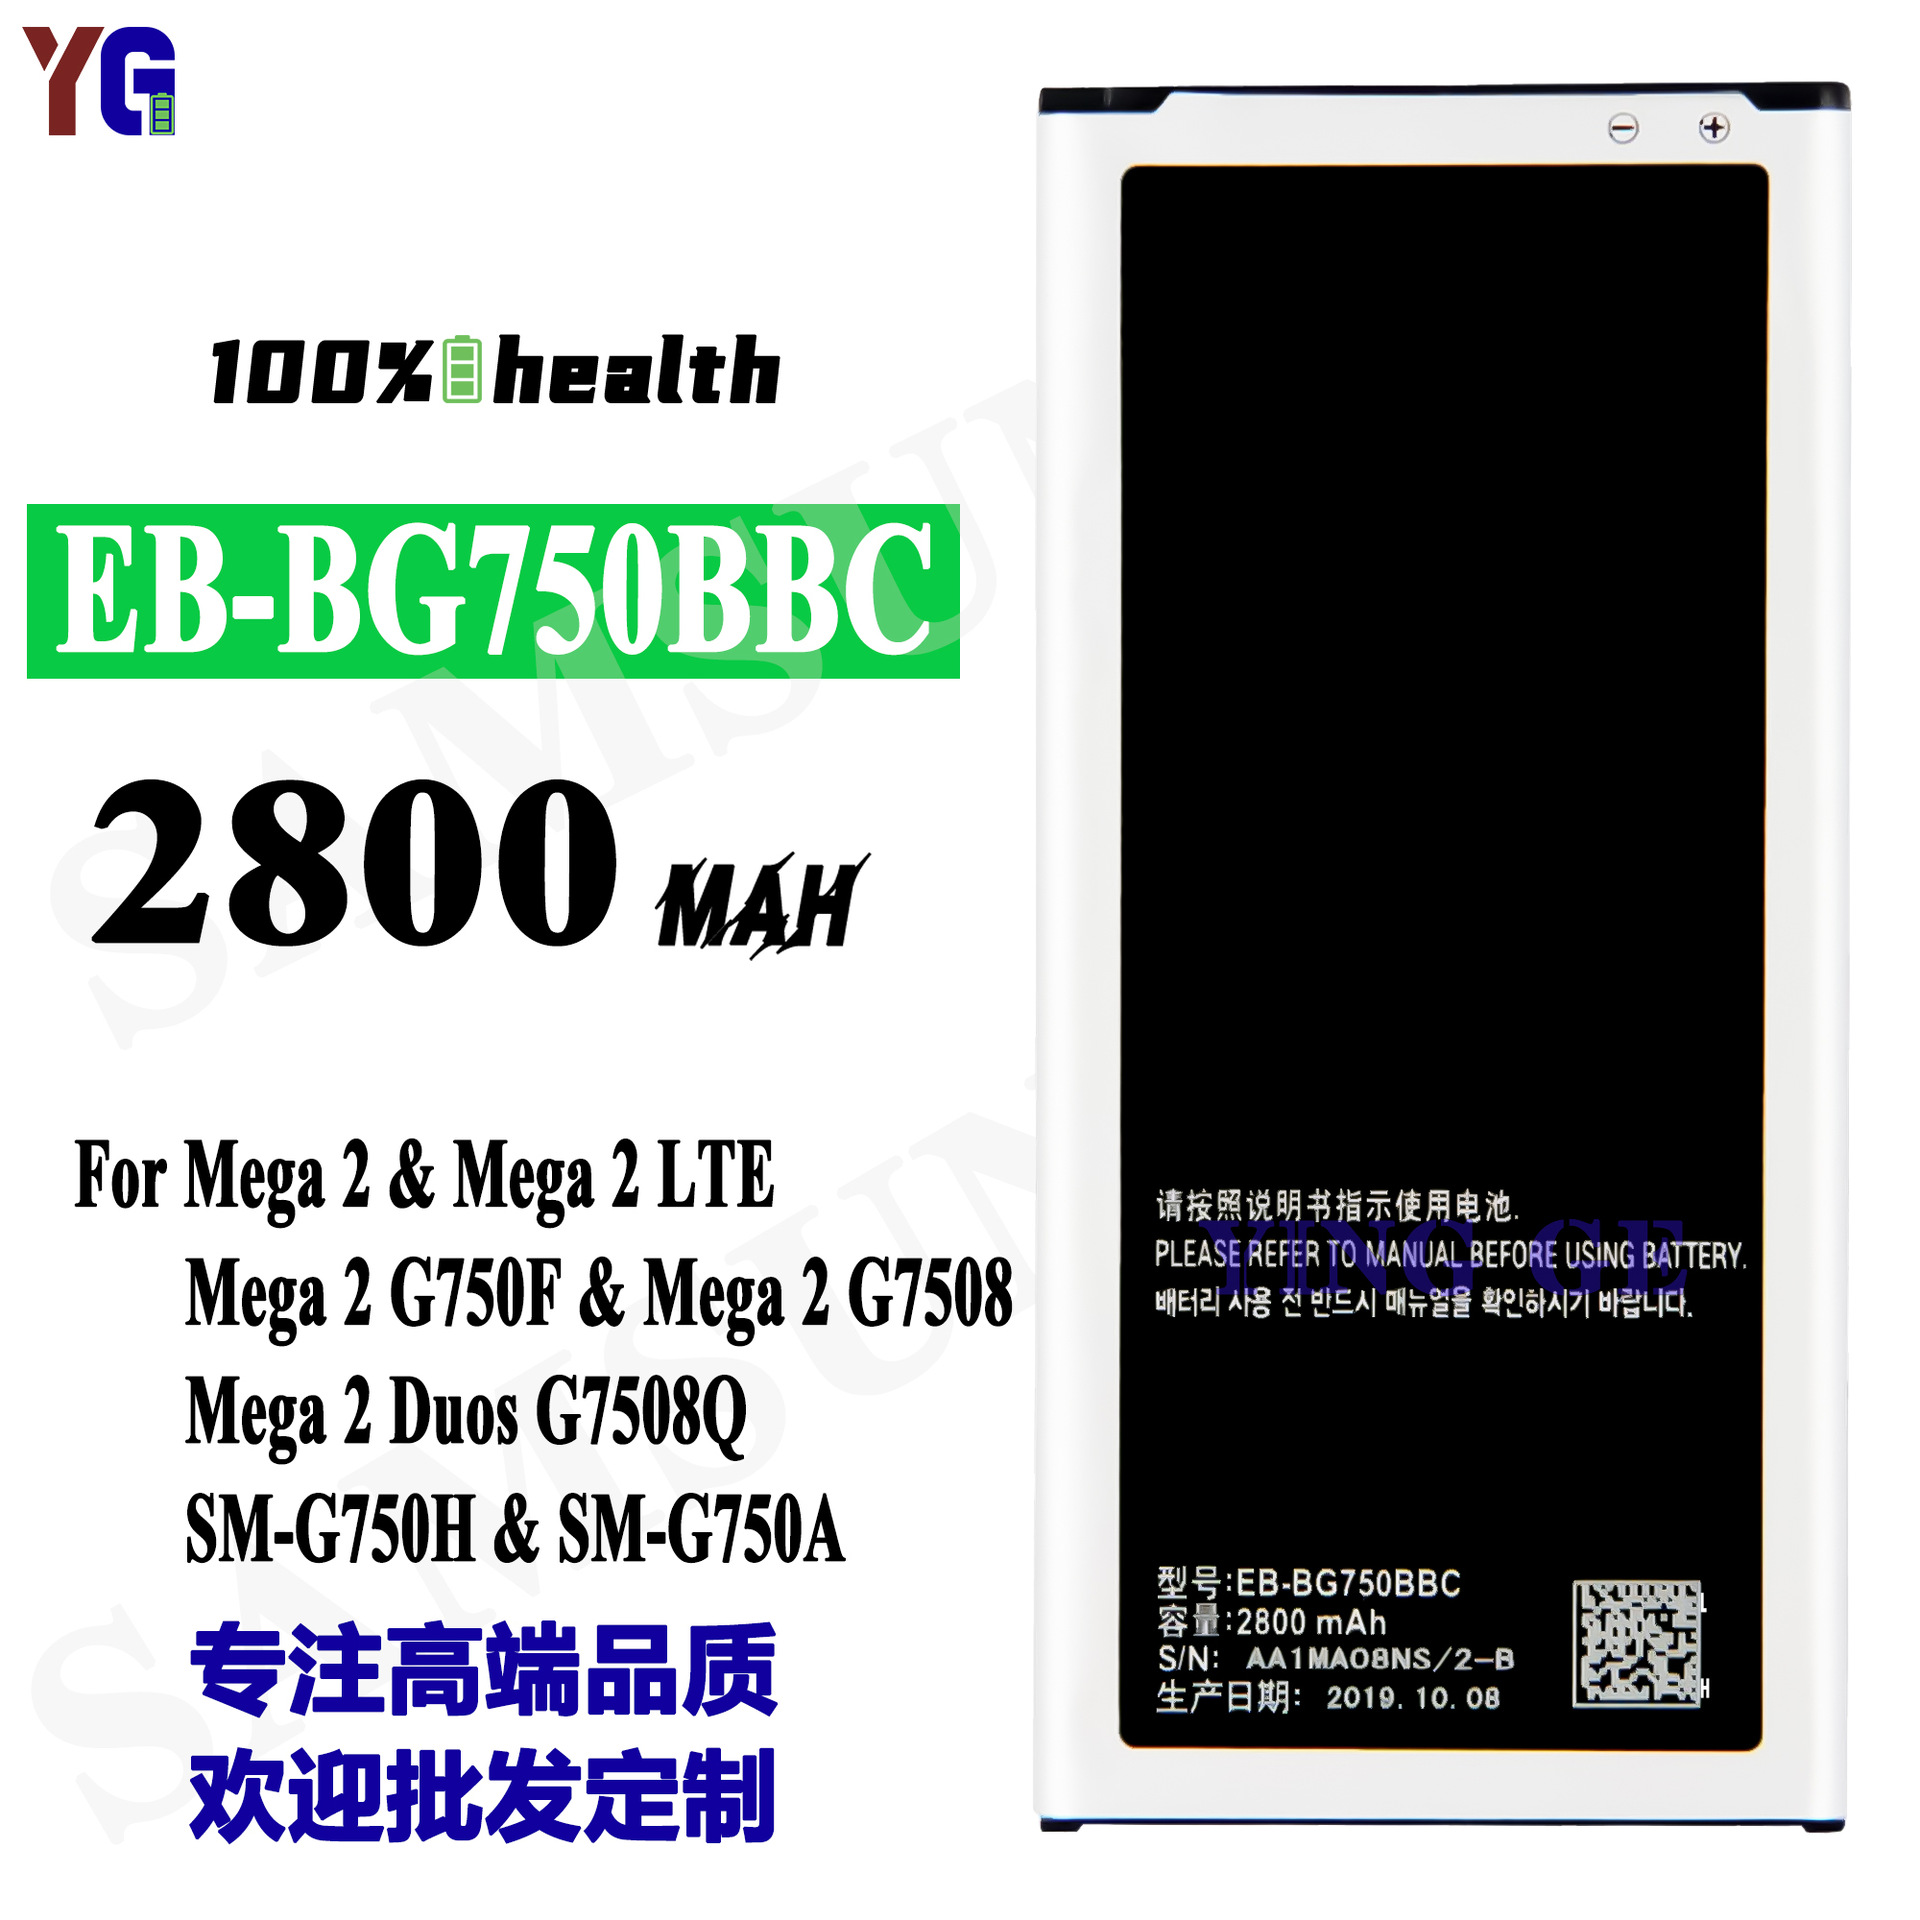 适用于三星Samsung手机 Mega 2/LTE/G750F 外置 EB-BG750BBC 电池